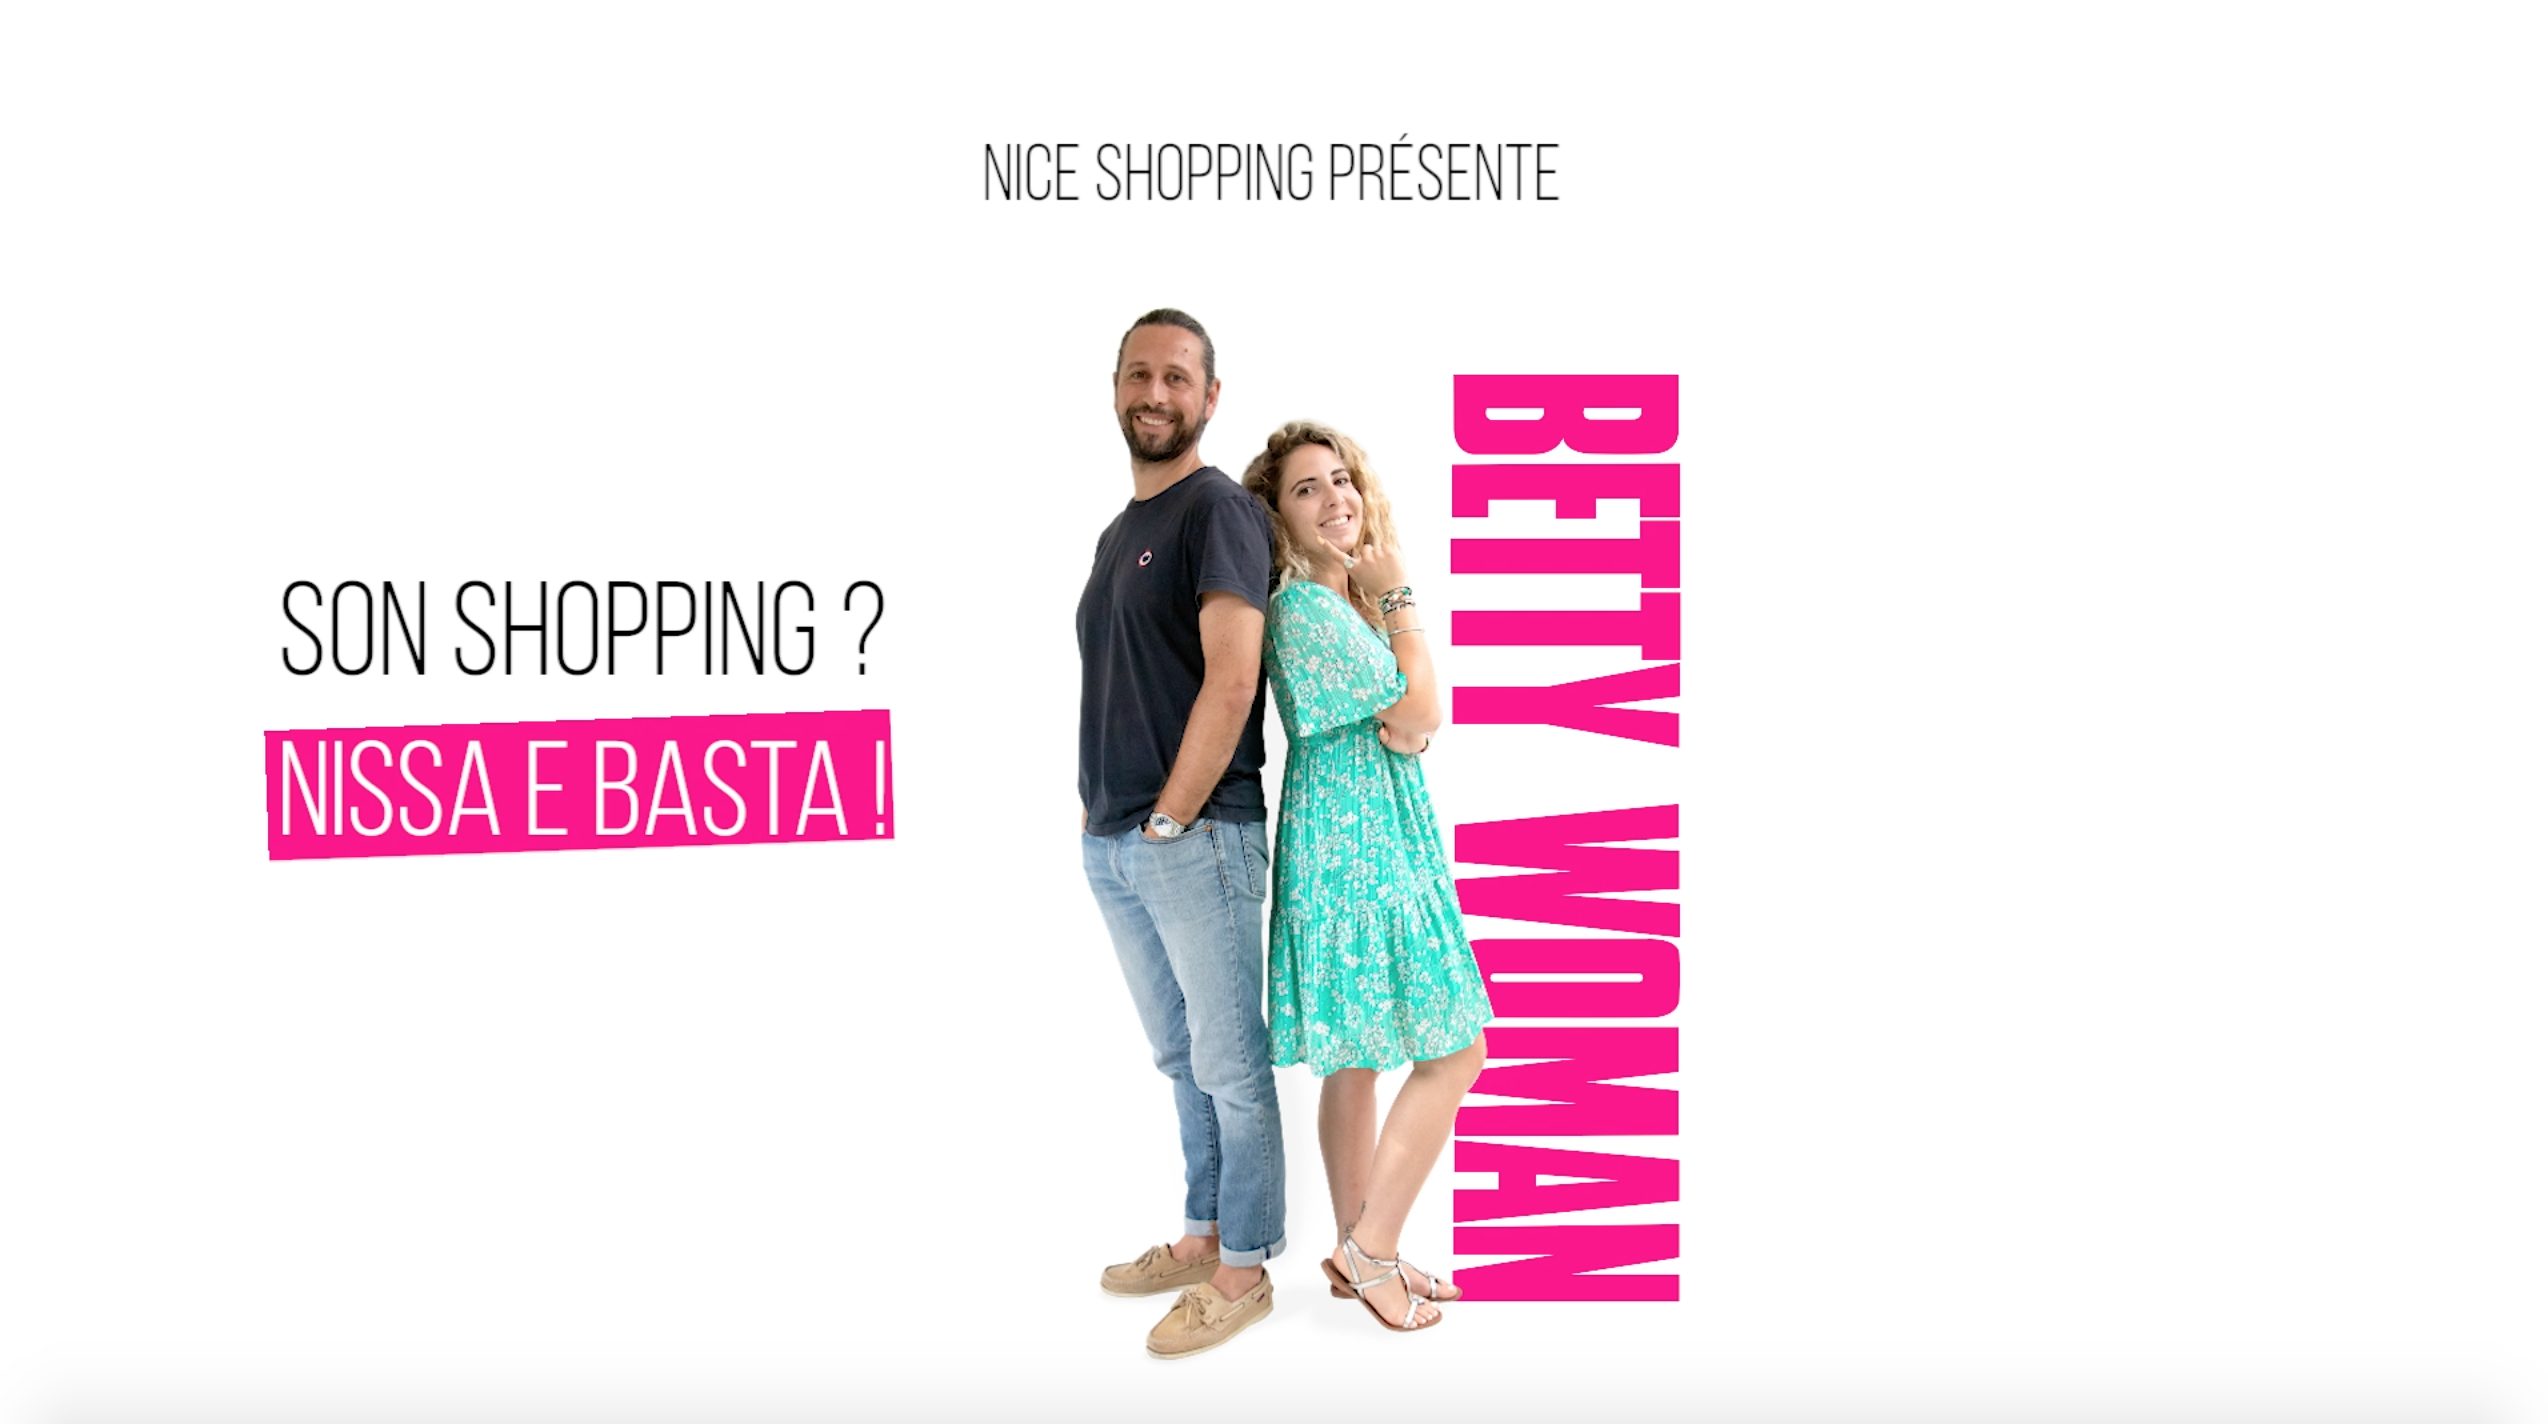 Betty Woman : son shopping ? À Nissa e basta !